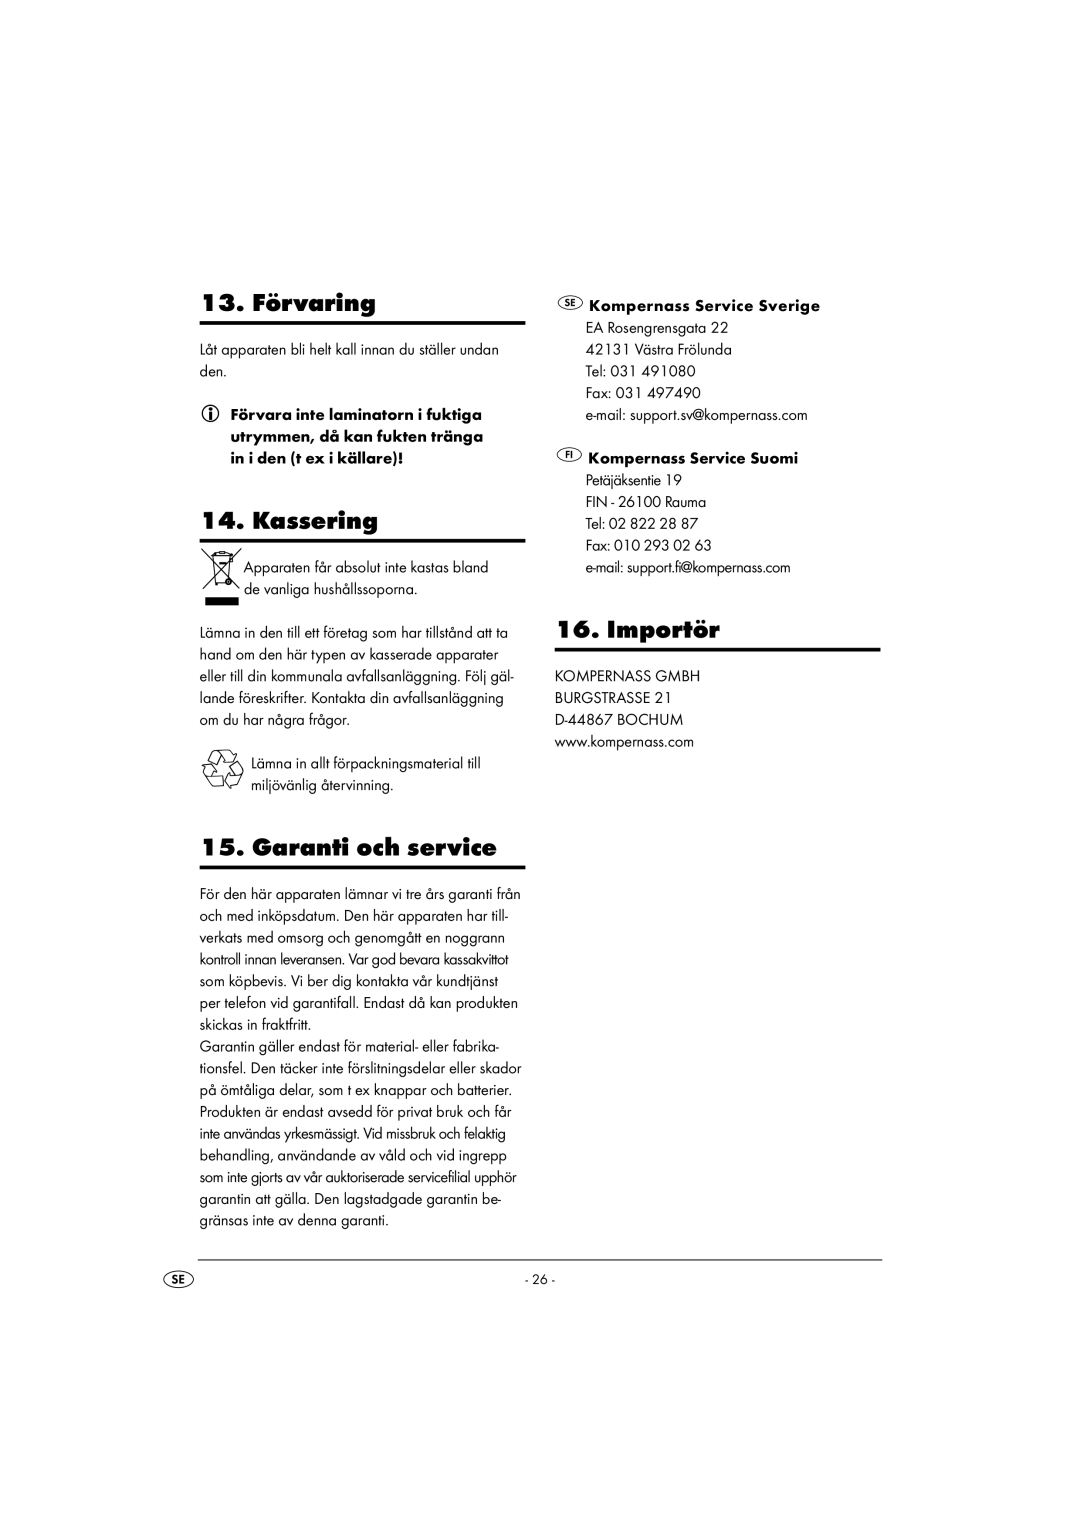 Kompernass KH 4412 manual 13. Förvaring, Kassering, Garanti och service, Importör 